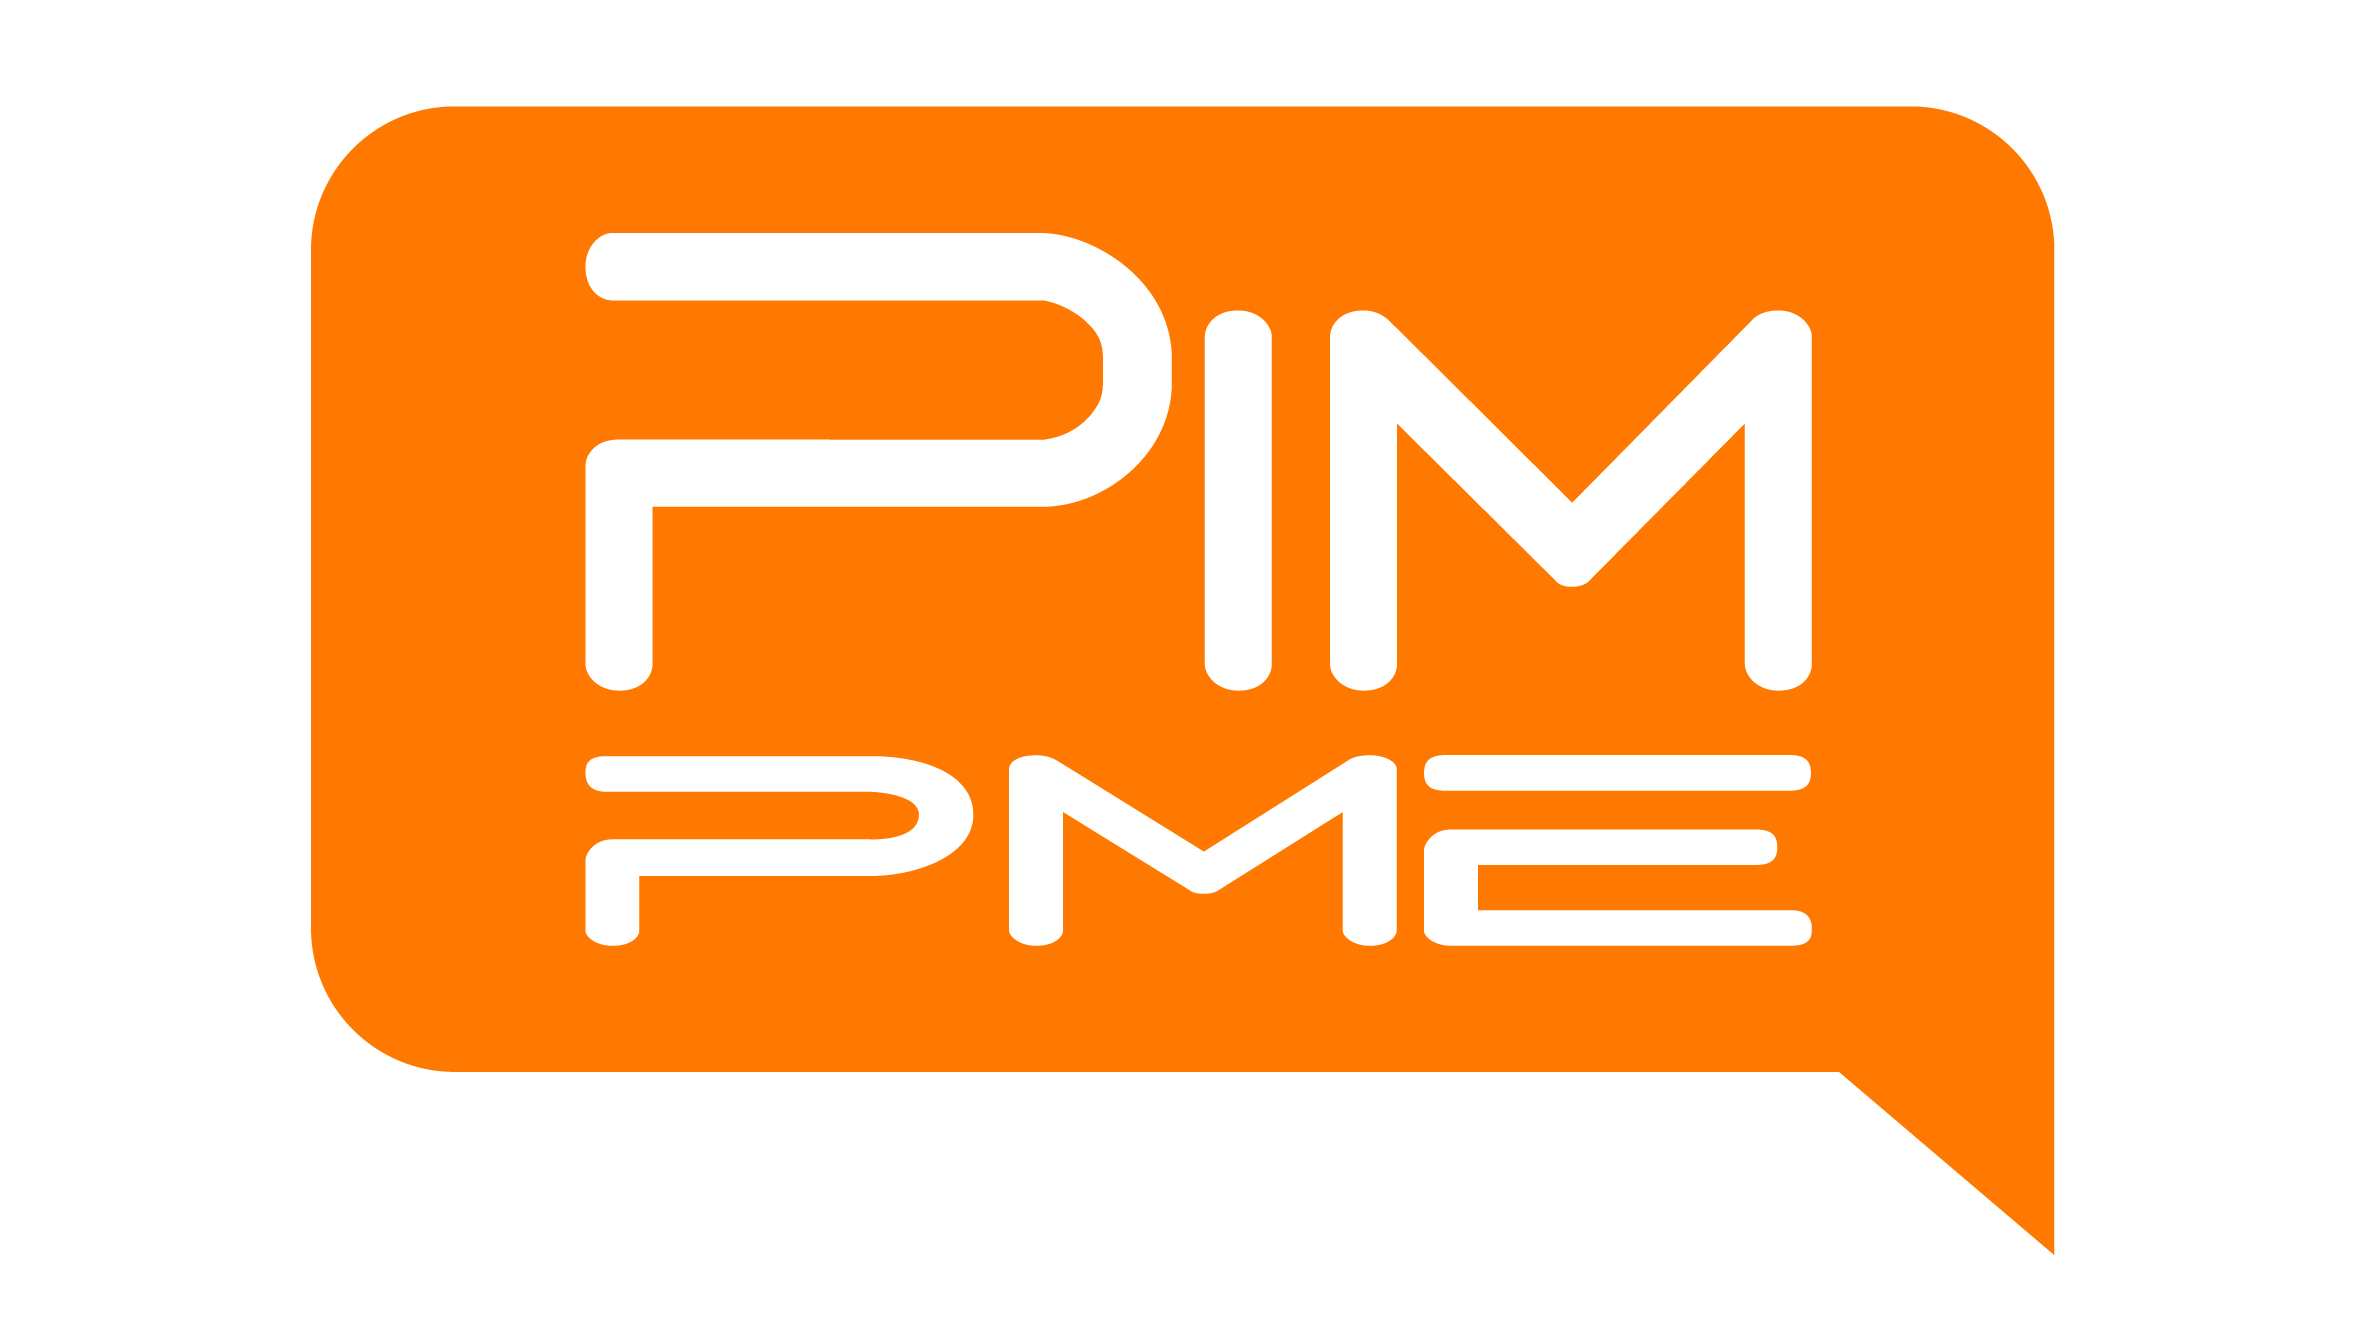 Pim PME